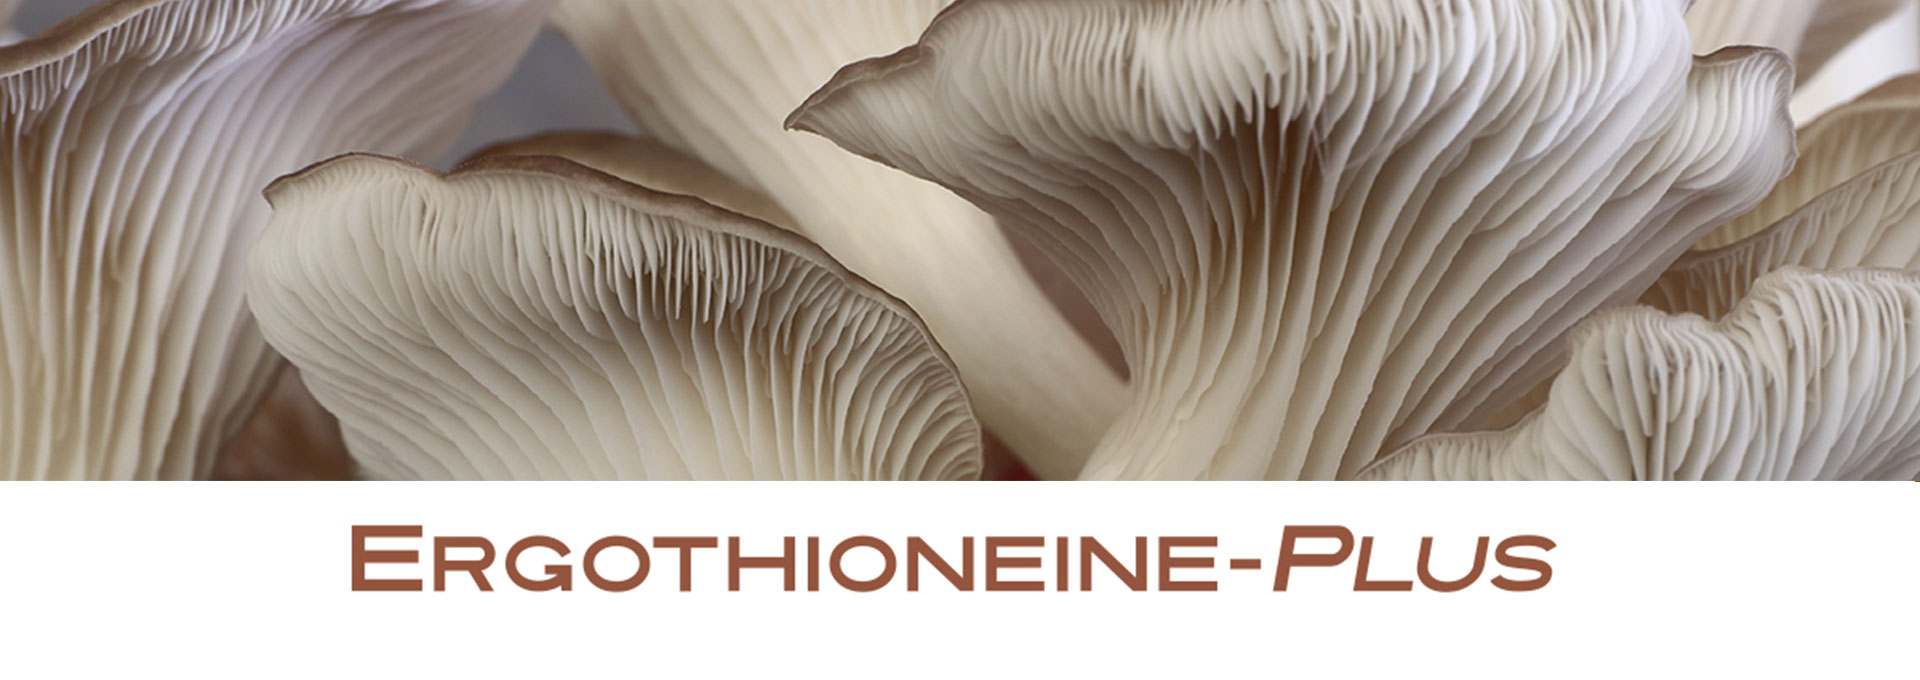 Ergothioneine-Plus banner